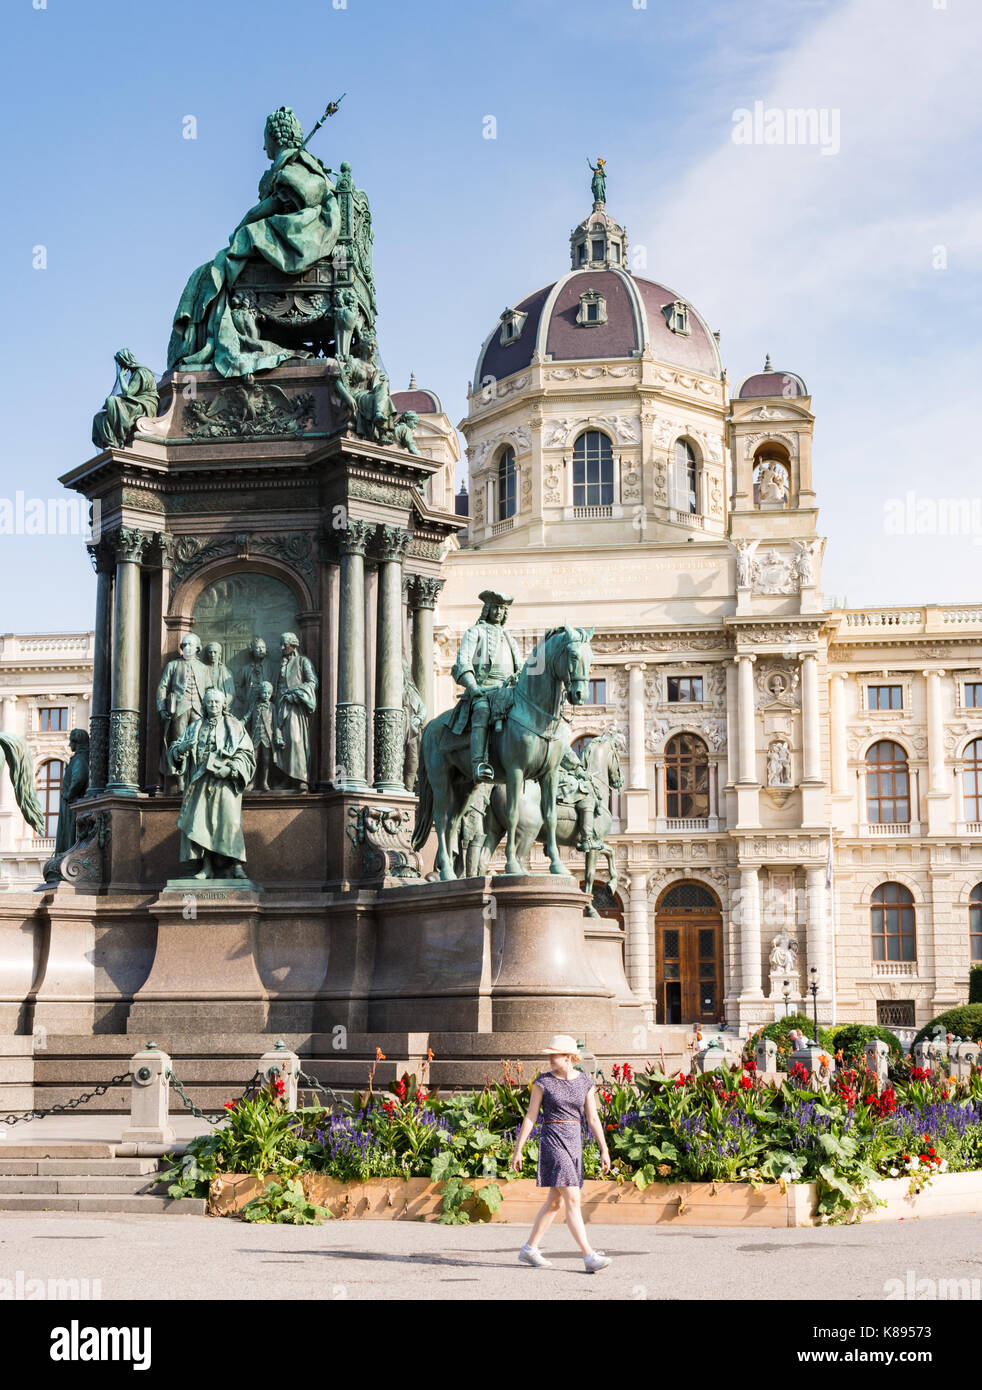 Vienne, Autriche - août 28 : les touristes du maria theresia monument et musée d'histoire de l'art à la maria-theresien-Platz, à Vienne, Autriche Banque D'Images